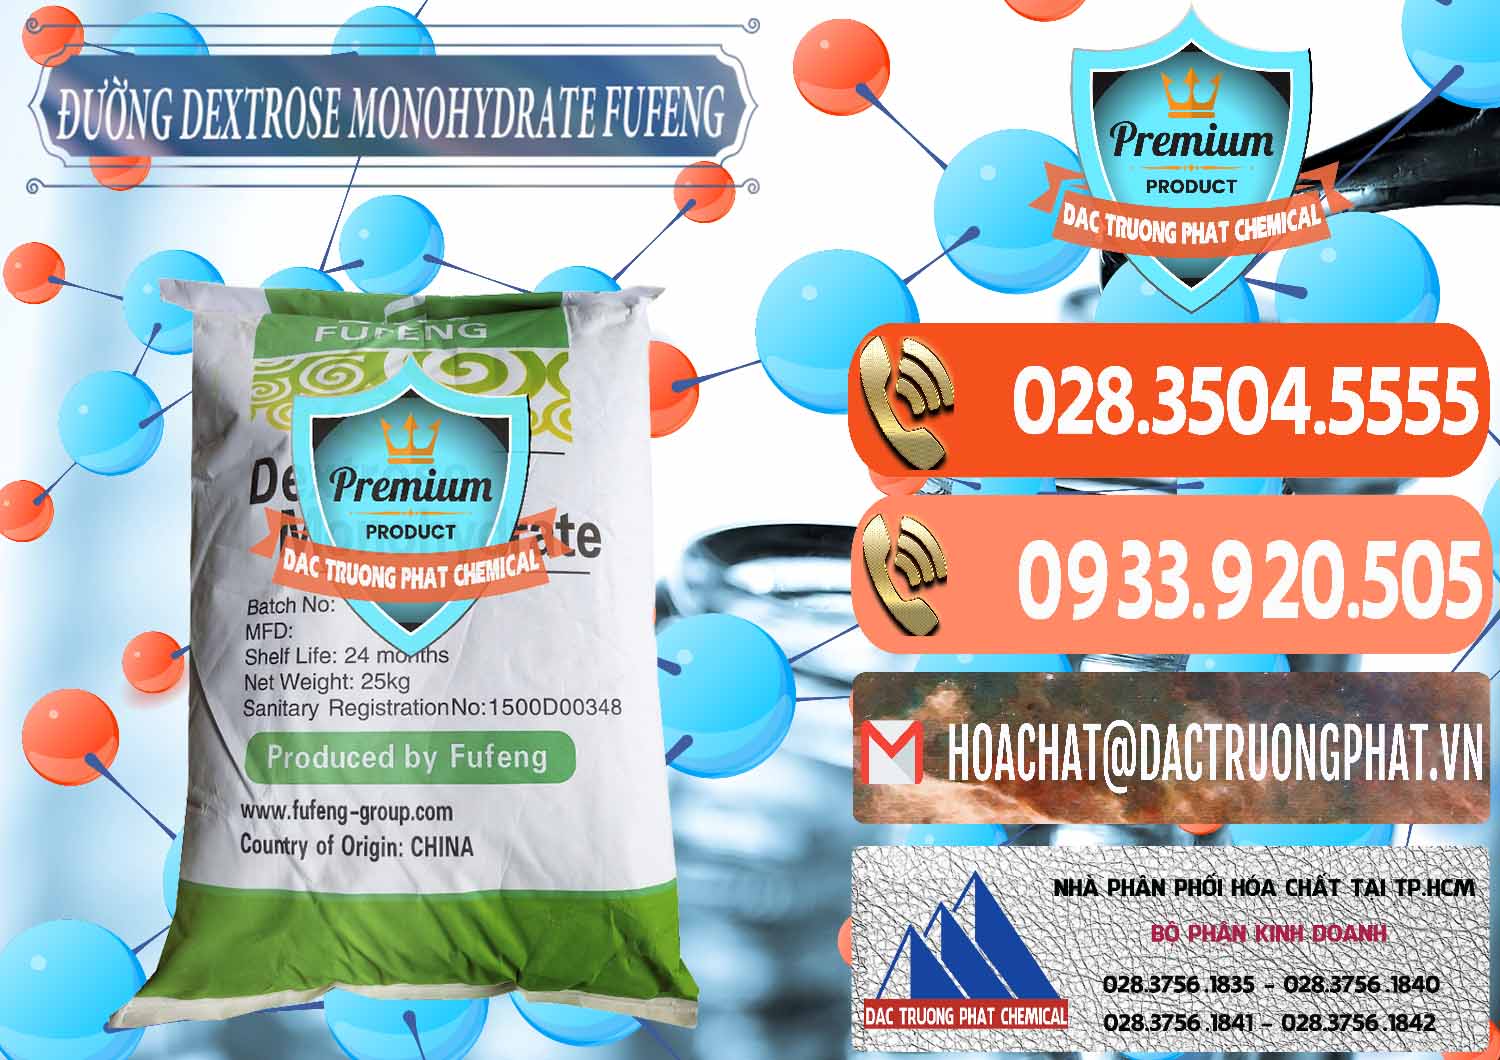 Nơi cung cấp & bán Đường Dextrose Monohydrate Food Grade Fufeng Trung Quốc China - 0223 - Đơn vị chuyên phân phối và nhập khẩu hóa chất tại TP.HCM - hoachatmientay.com